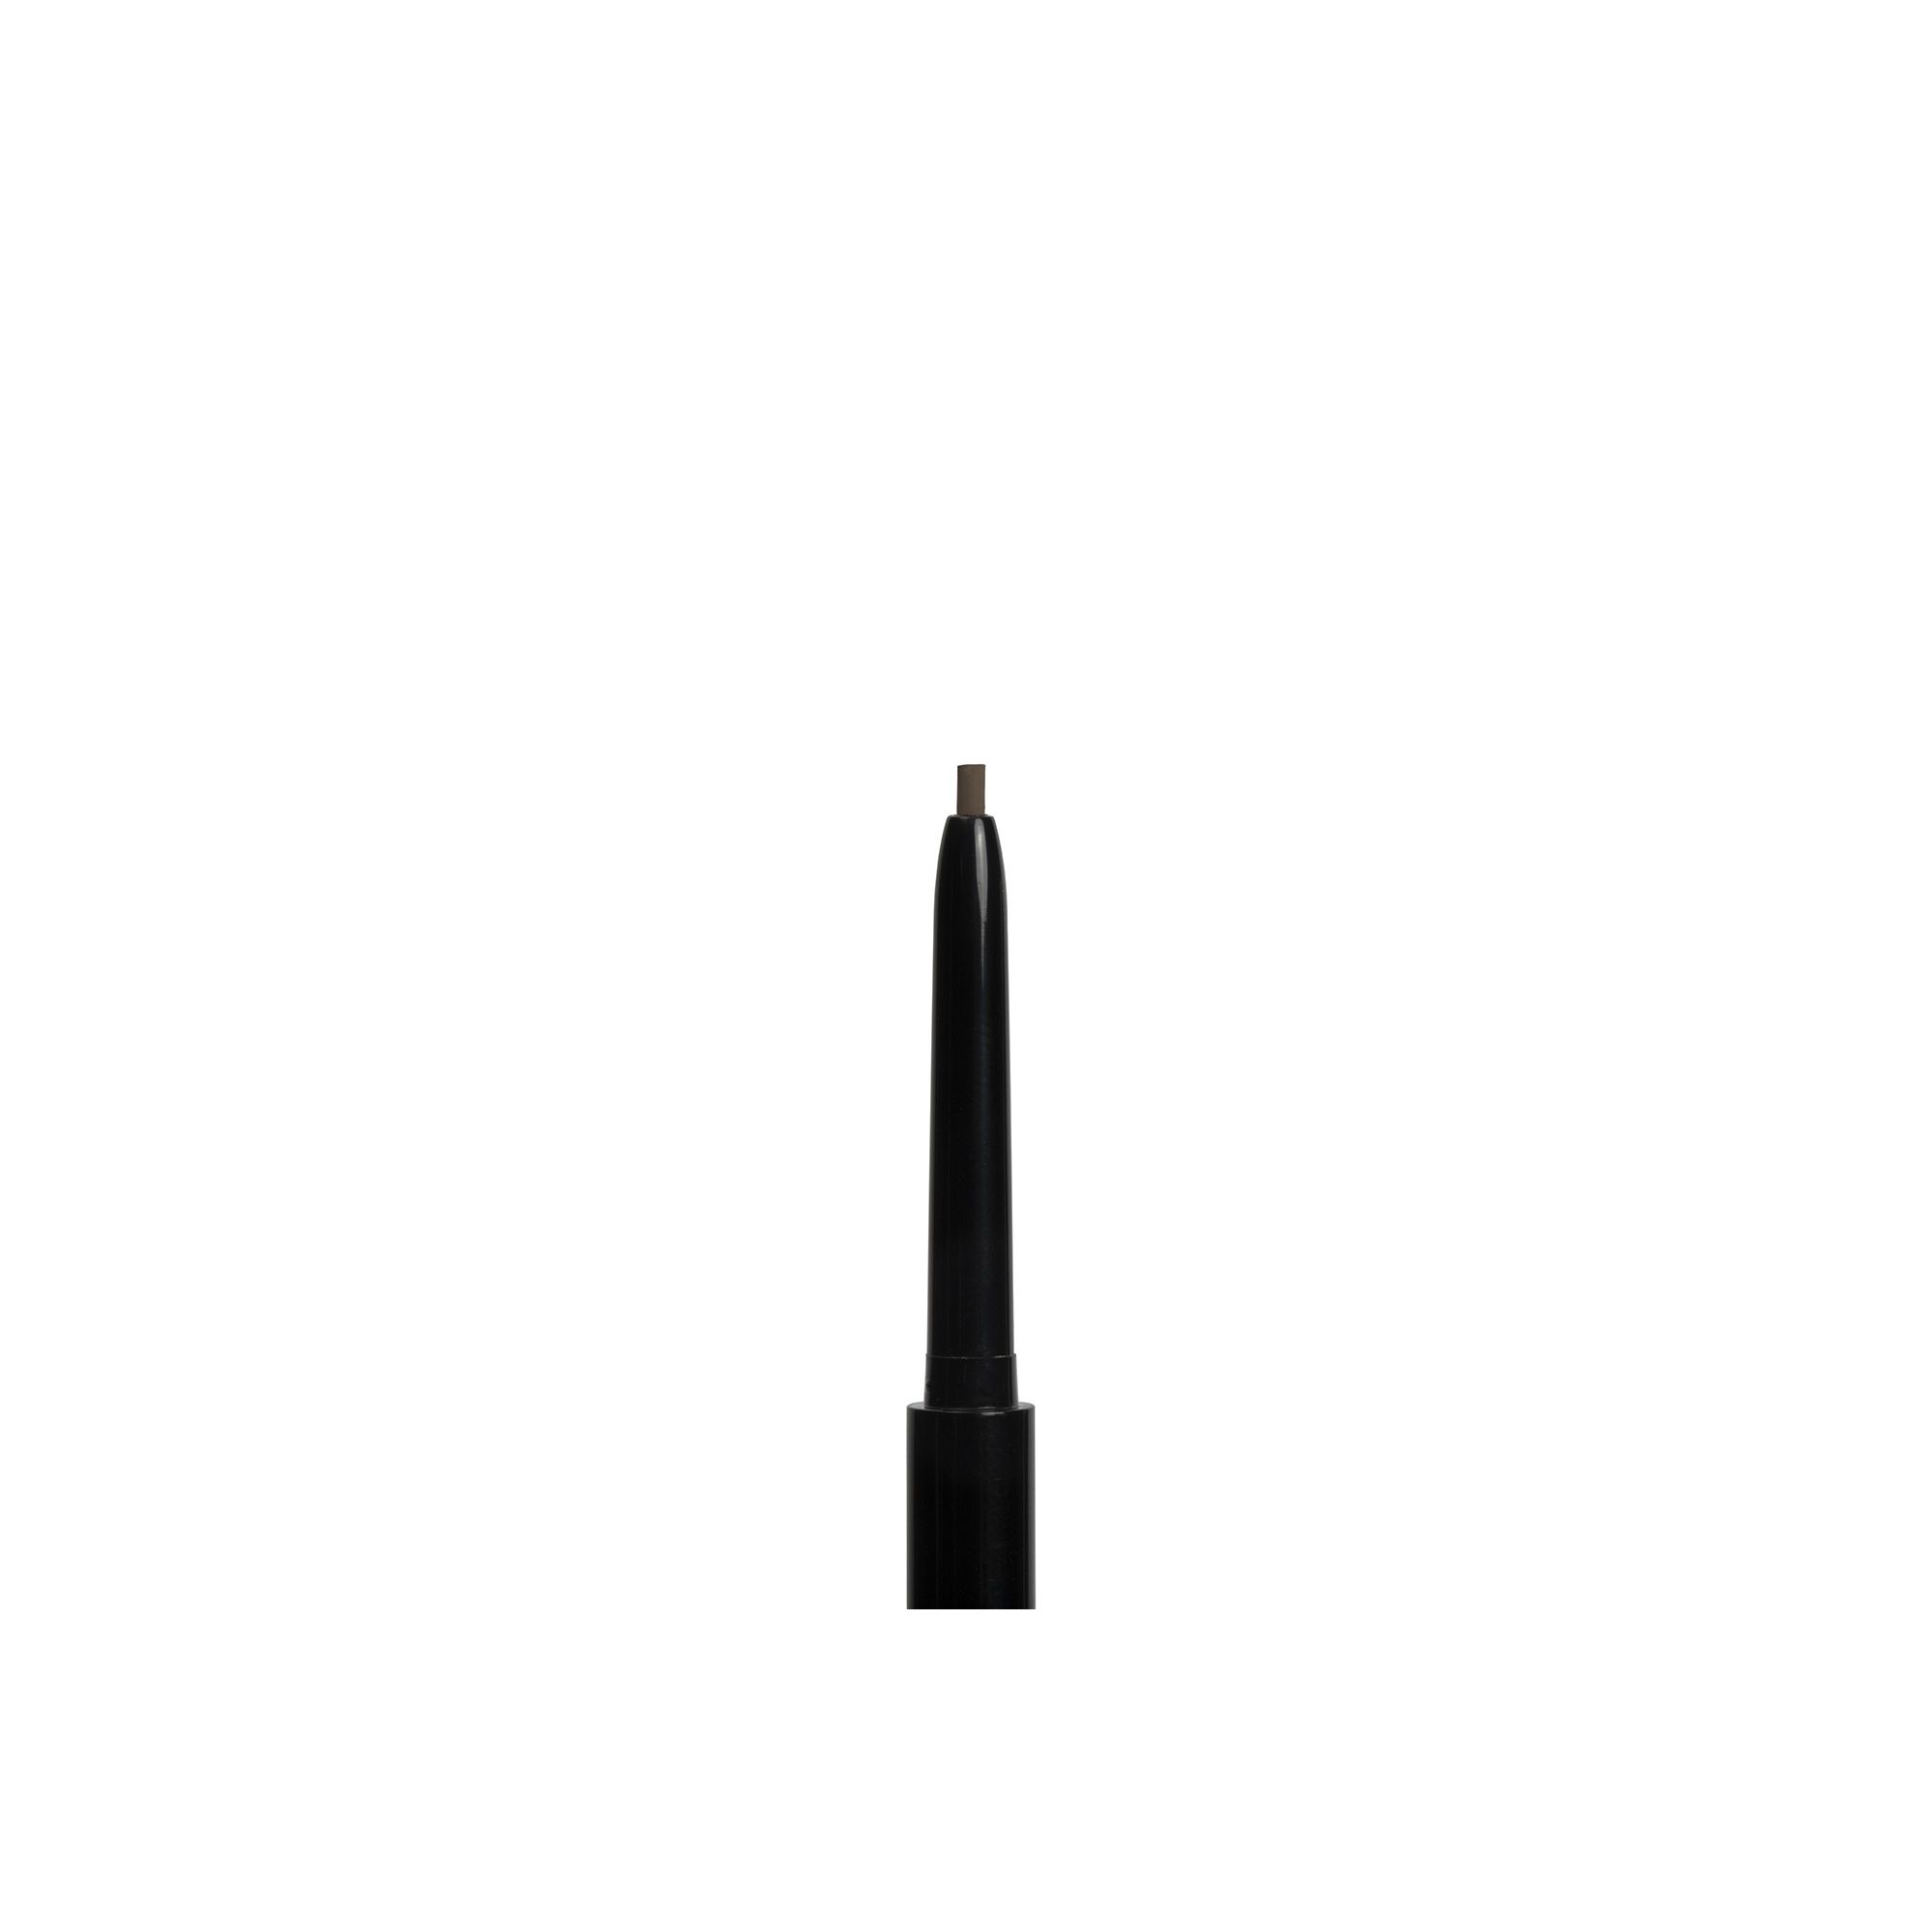 Augenbrauen-Stift - Slim Brow Pencil